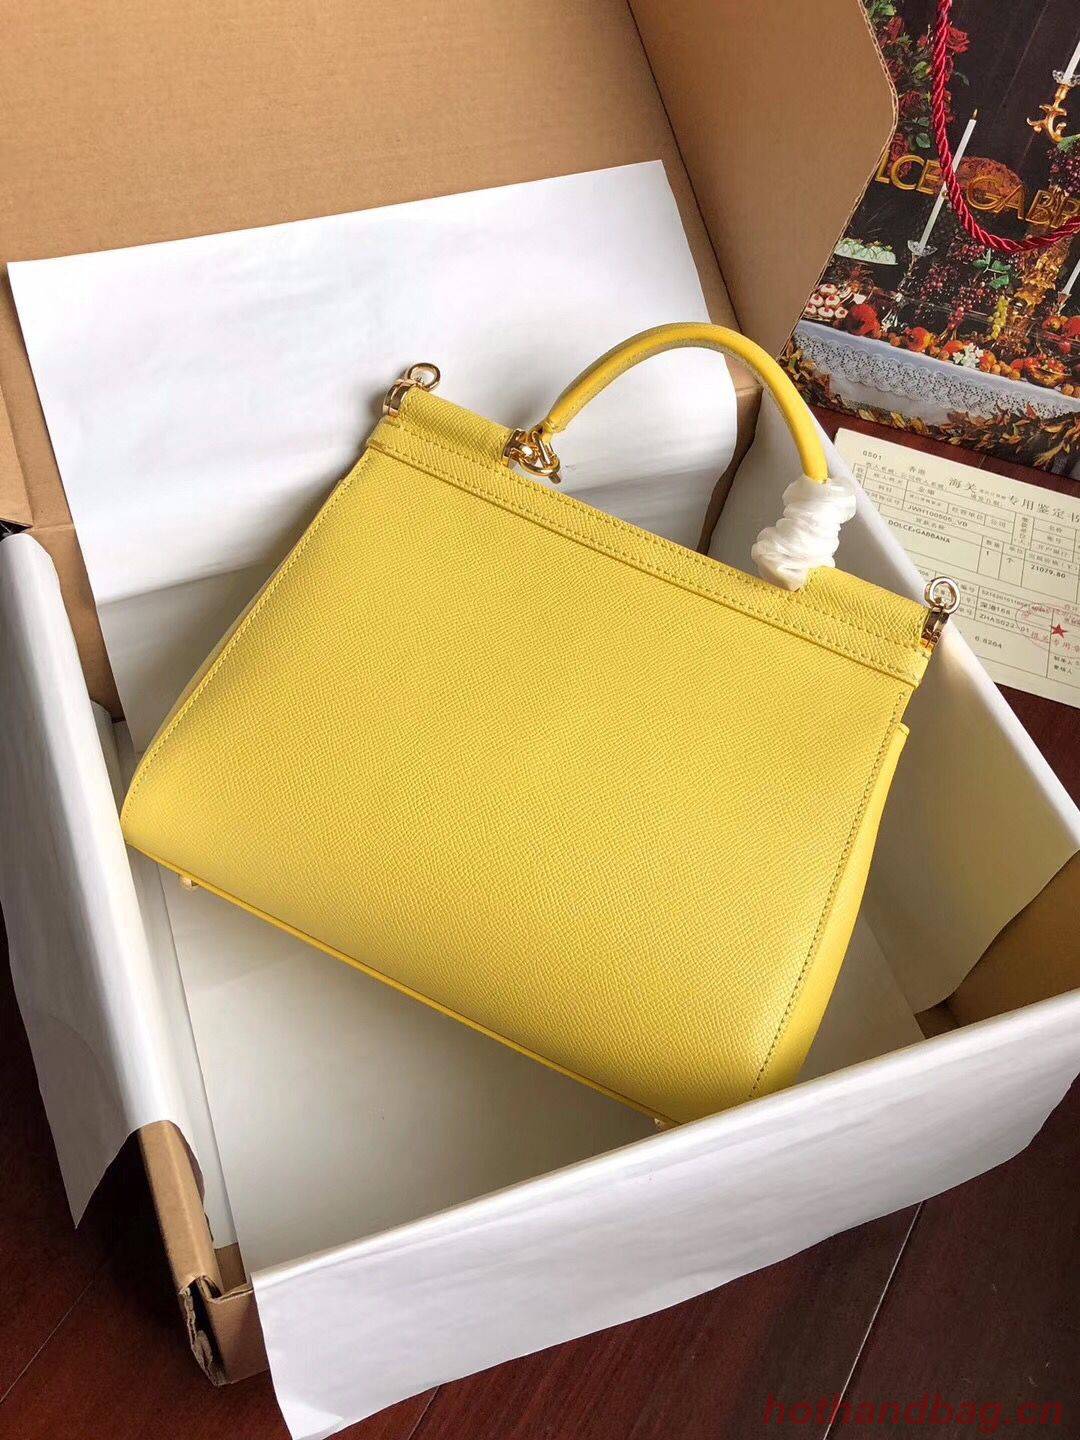 Dolce & Gabbana SICILY Bag Calfskin Leather 4139 yellow